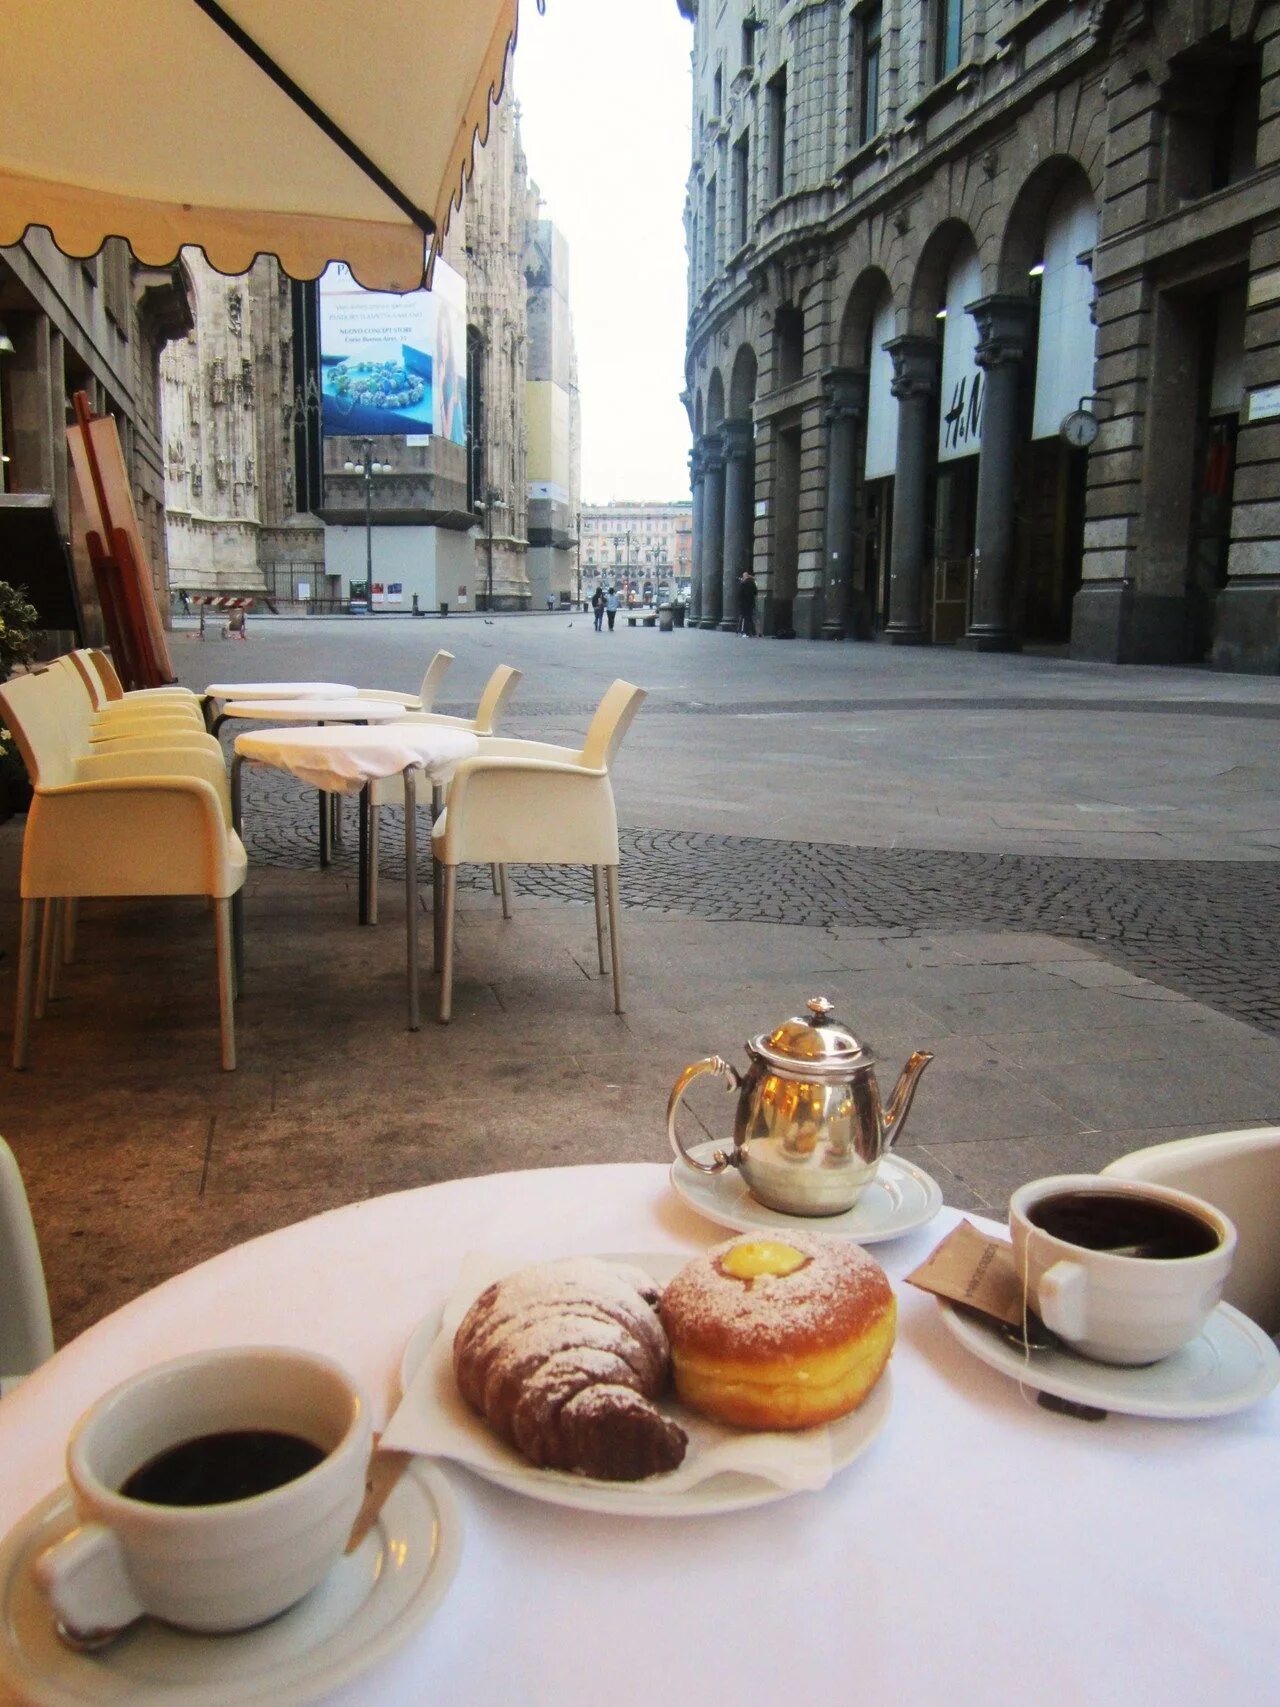 Завтрак. Чашка кофе в кафе на улице. Завтрак с кофе. Завтрак в Италии. Кофейни с завтраками